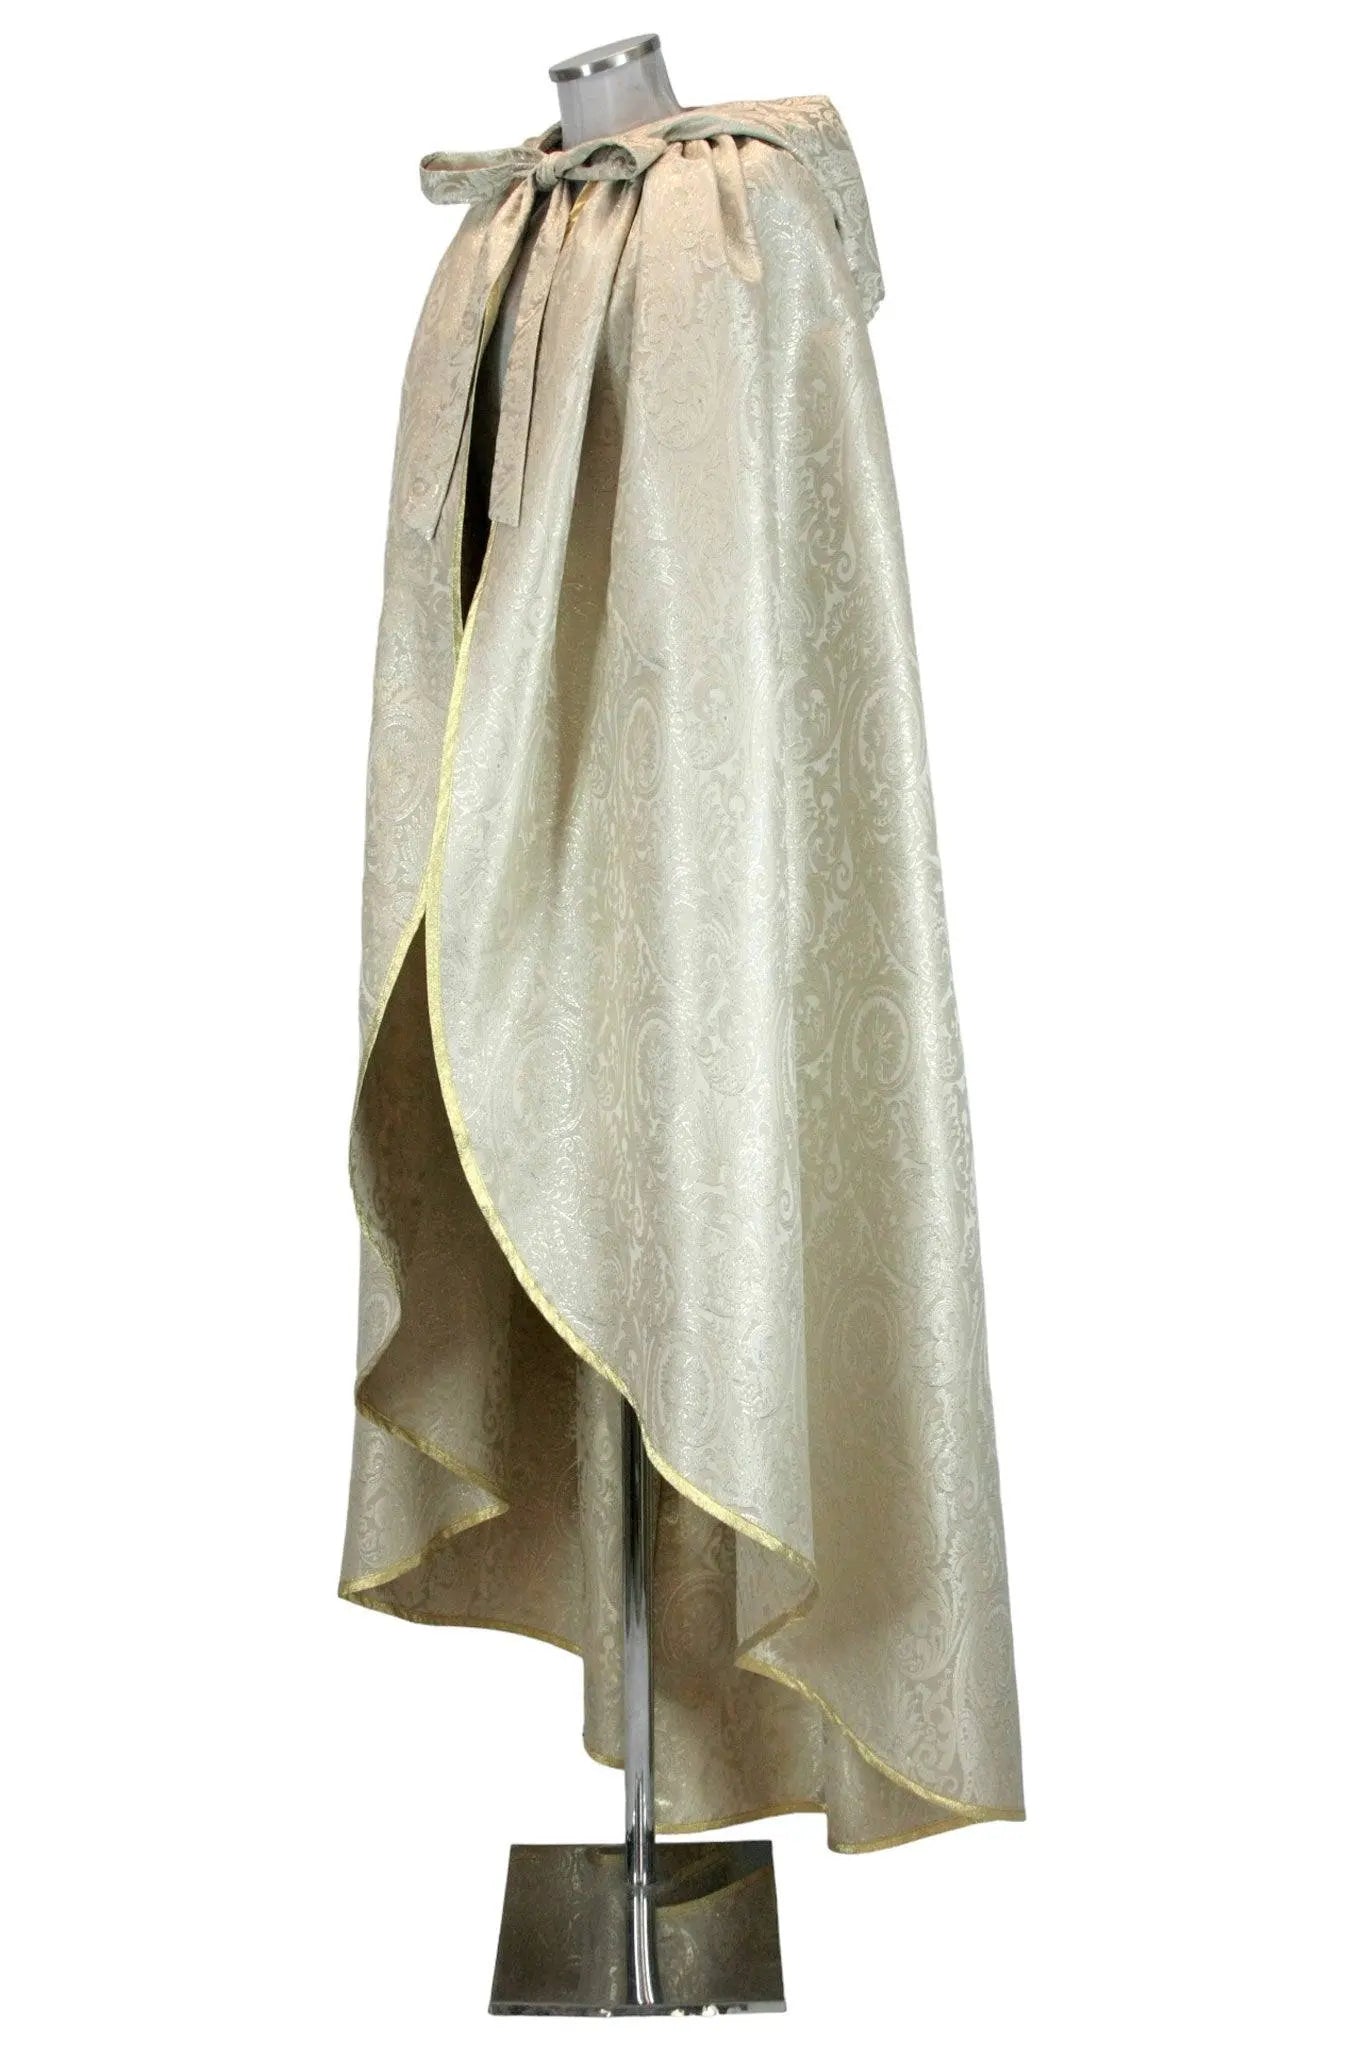 Mantello lungo donna damascato con cappuccio - storico - carnevale